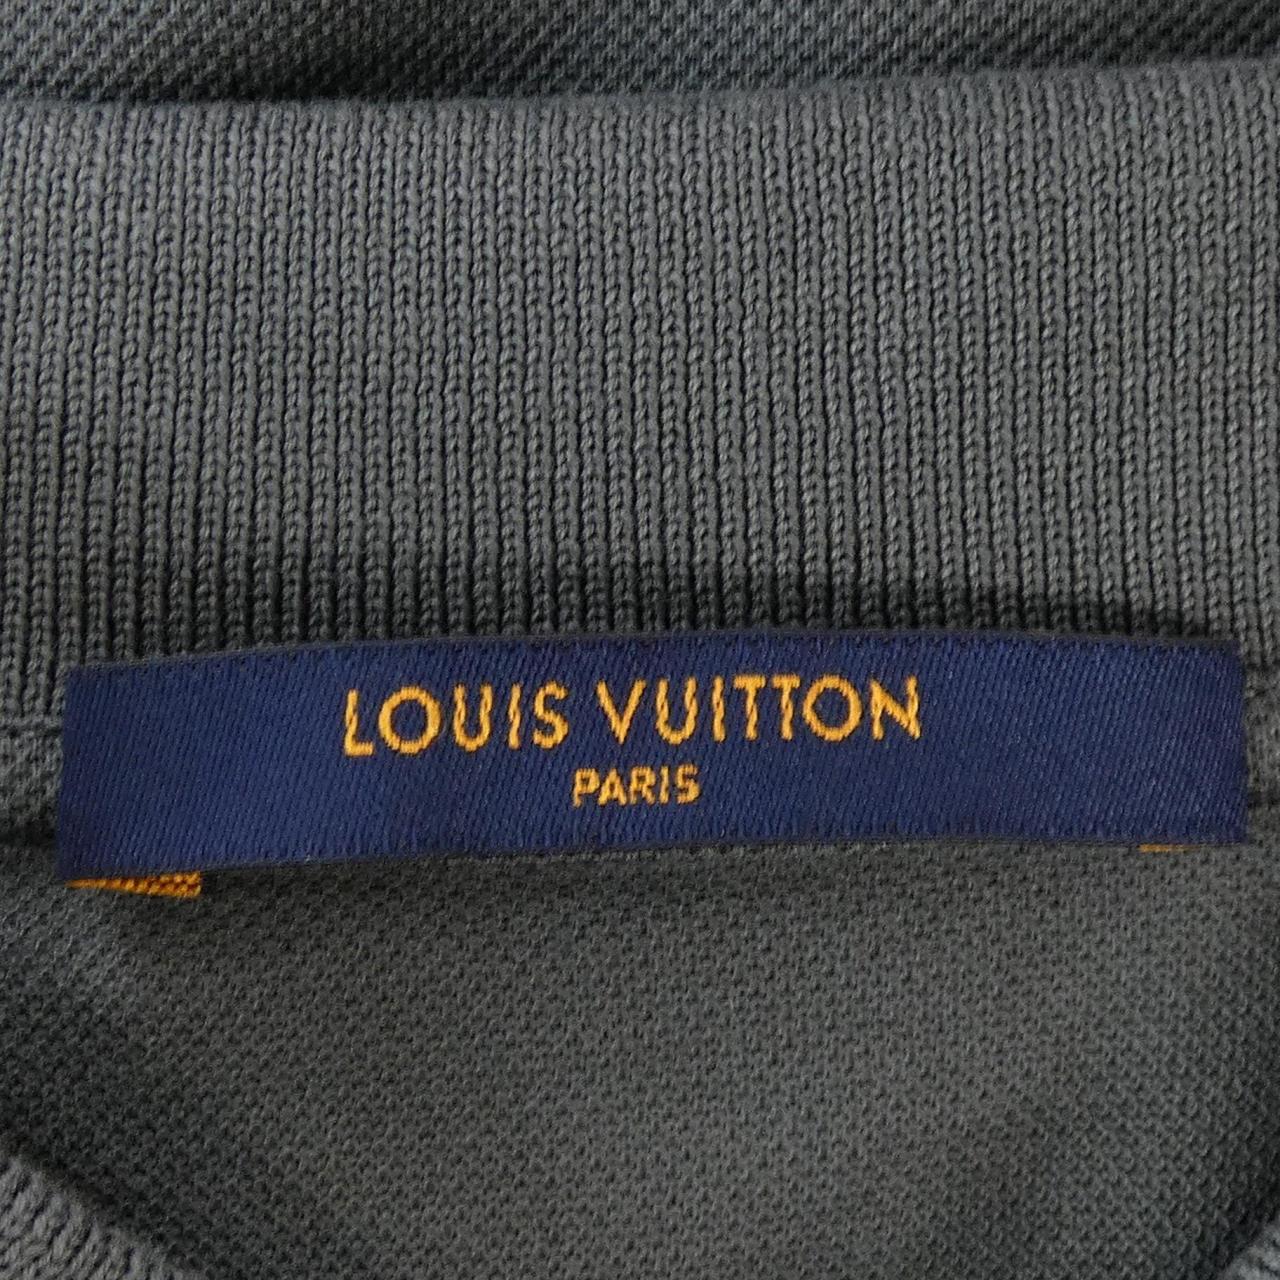 LOUIS VUITTON VUITTON polo shirt